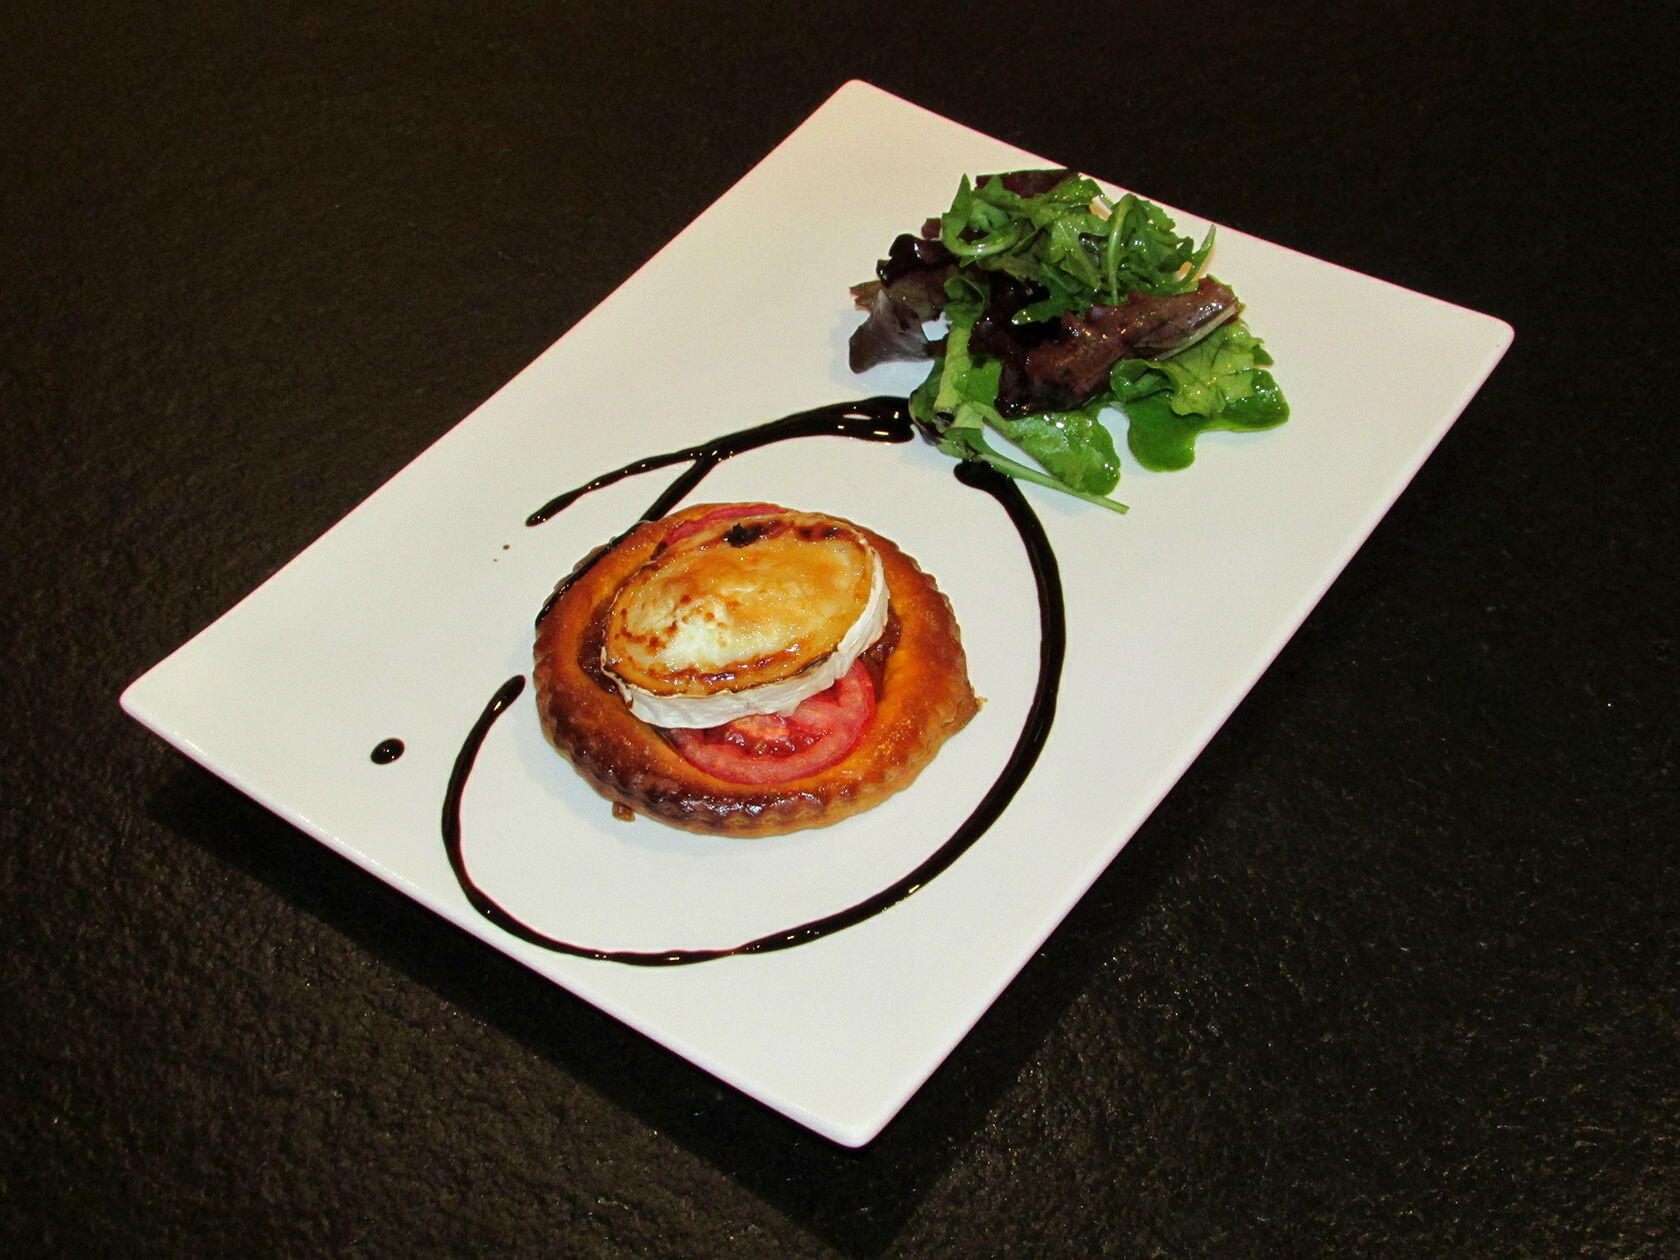 Tomato and Goat's Cheese Tart #Recipe @MasdAugustine